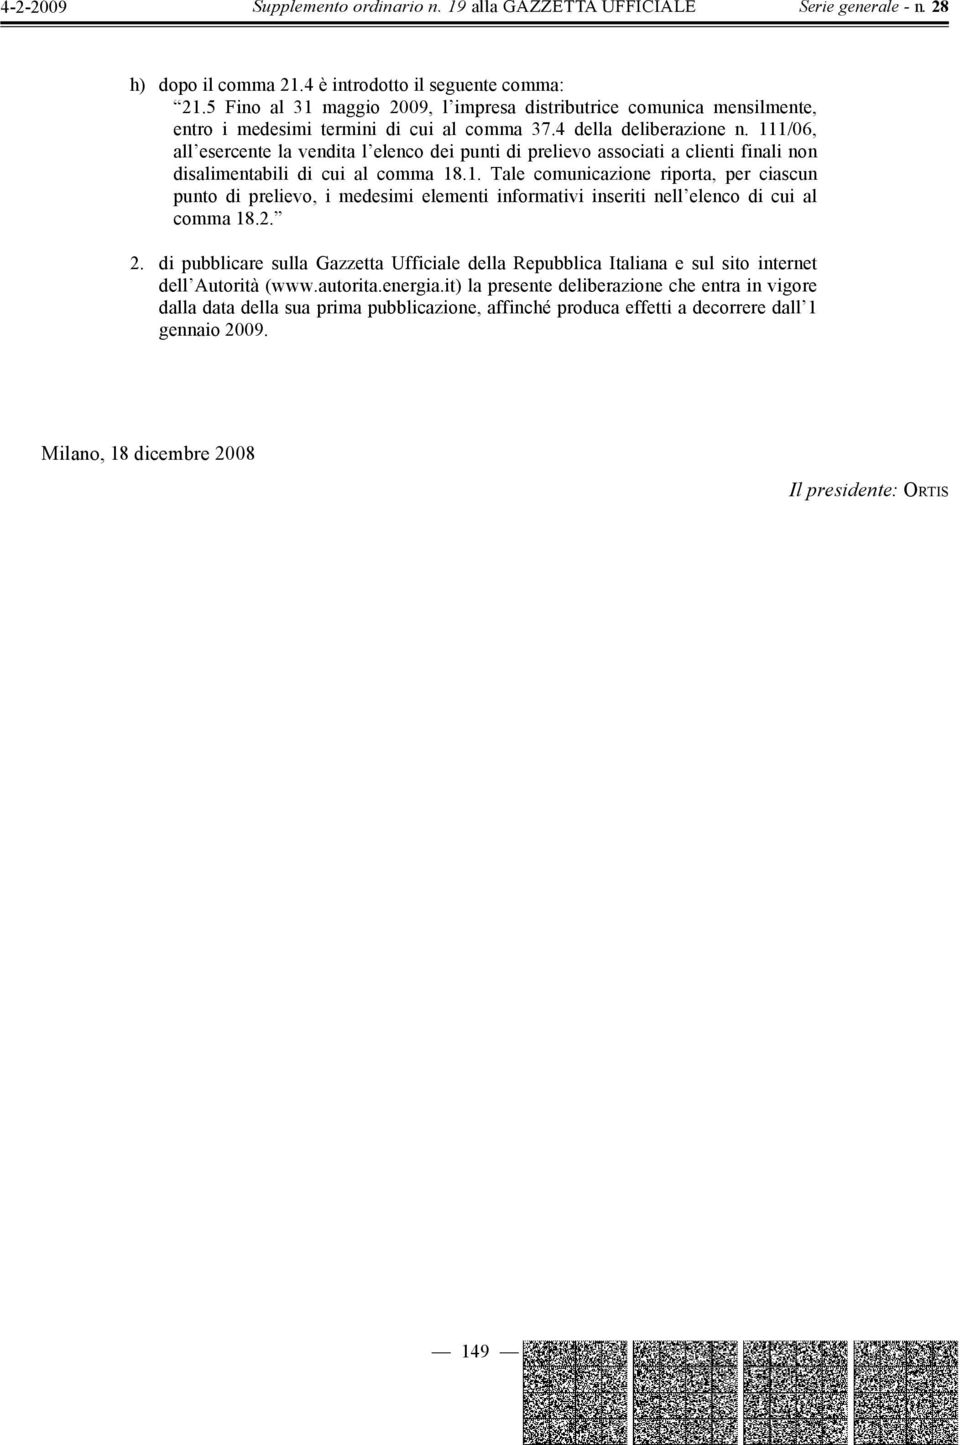 2. 2. di pubblicare sulla Gazzetta Ufficiale della Repubblica Italiana e sul sito internet dell Autorità (www.autorita.energia.